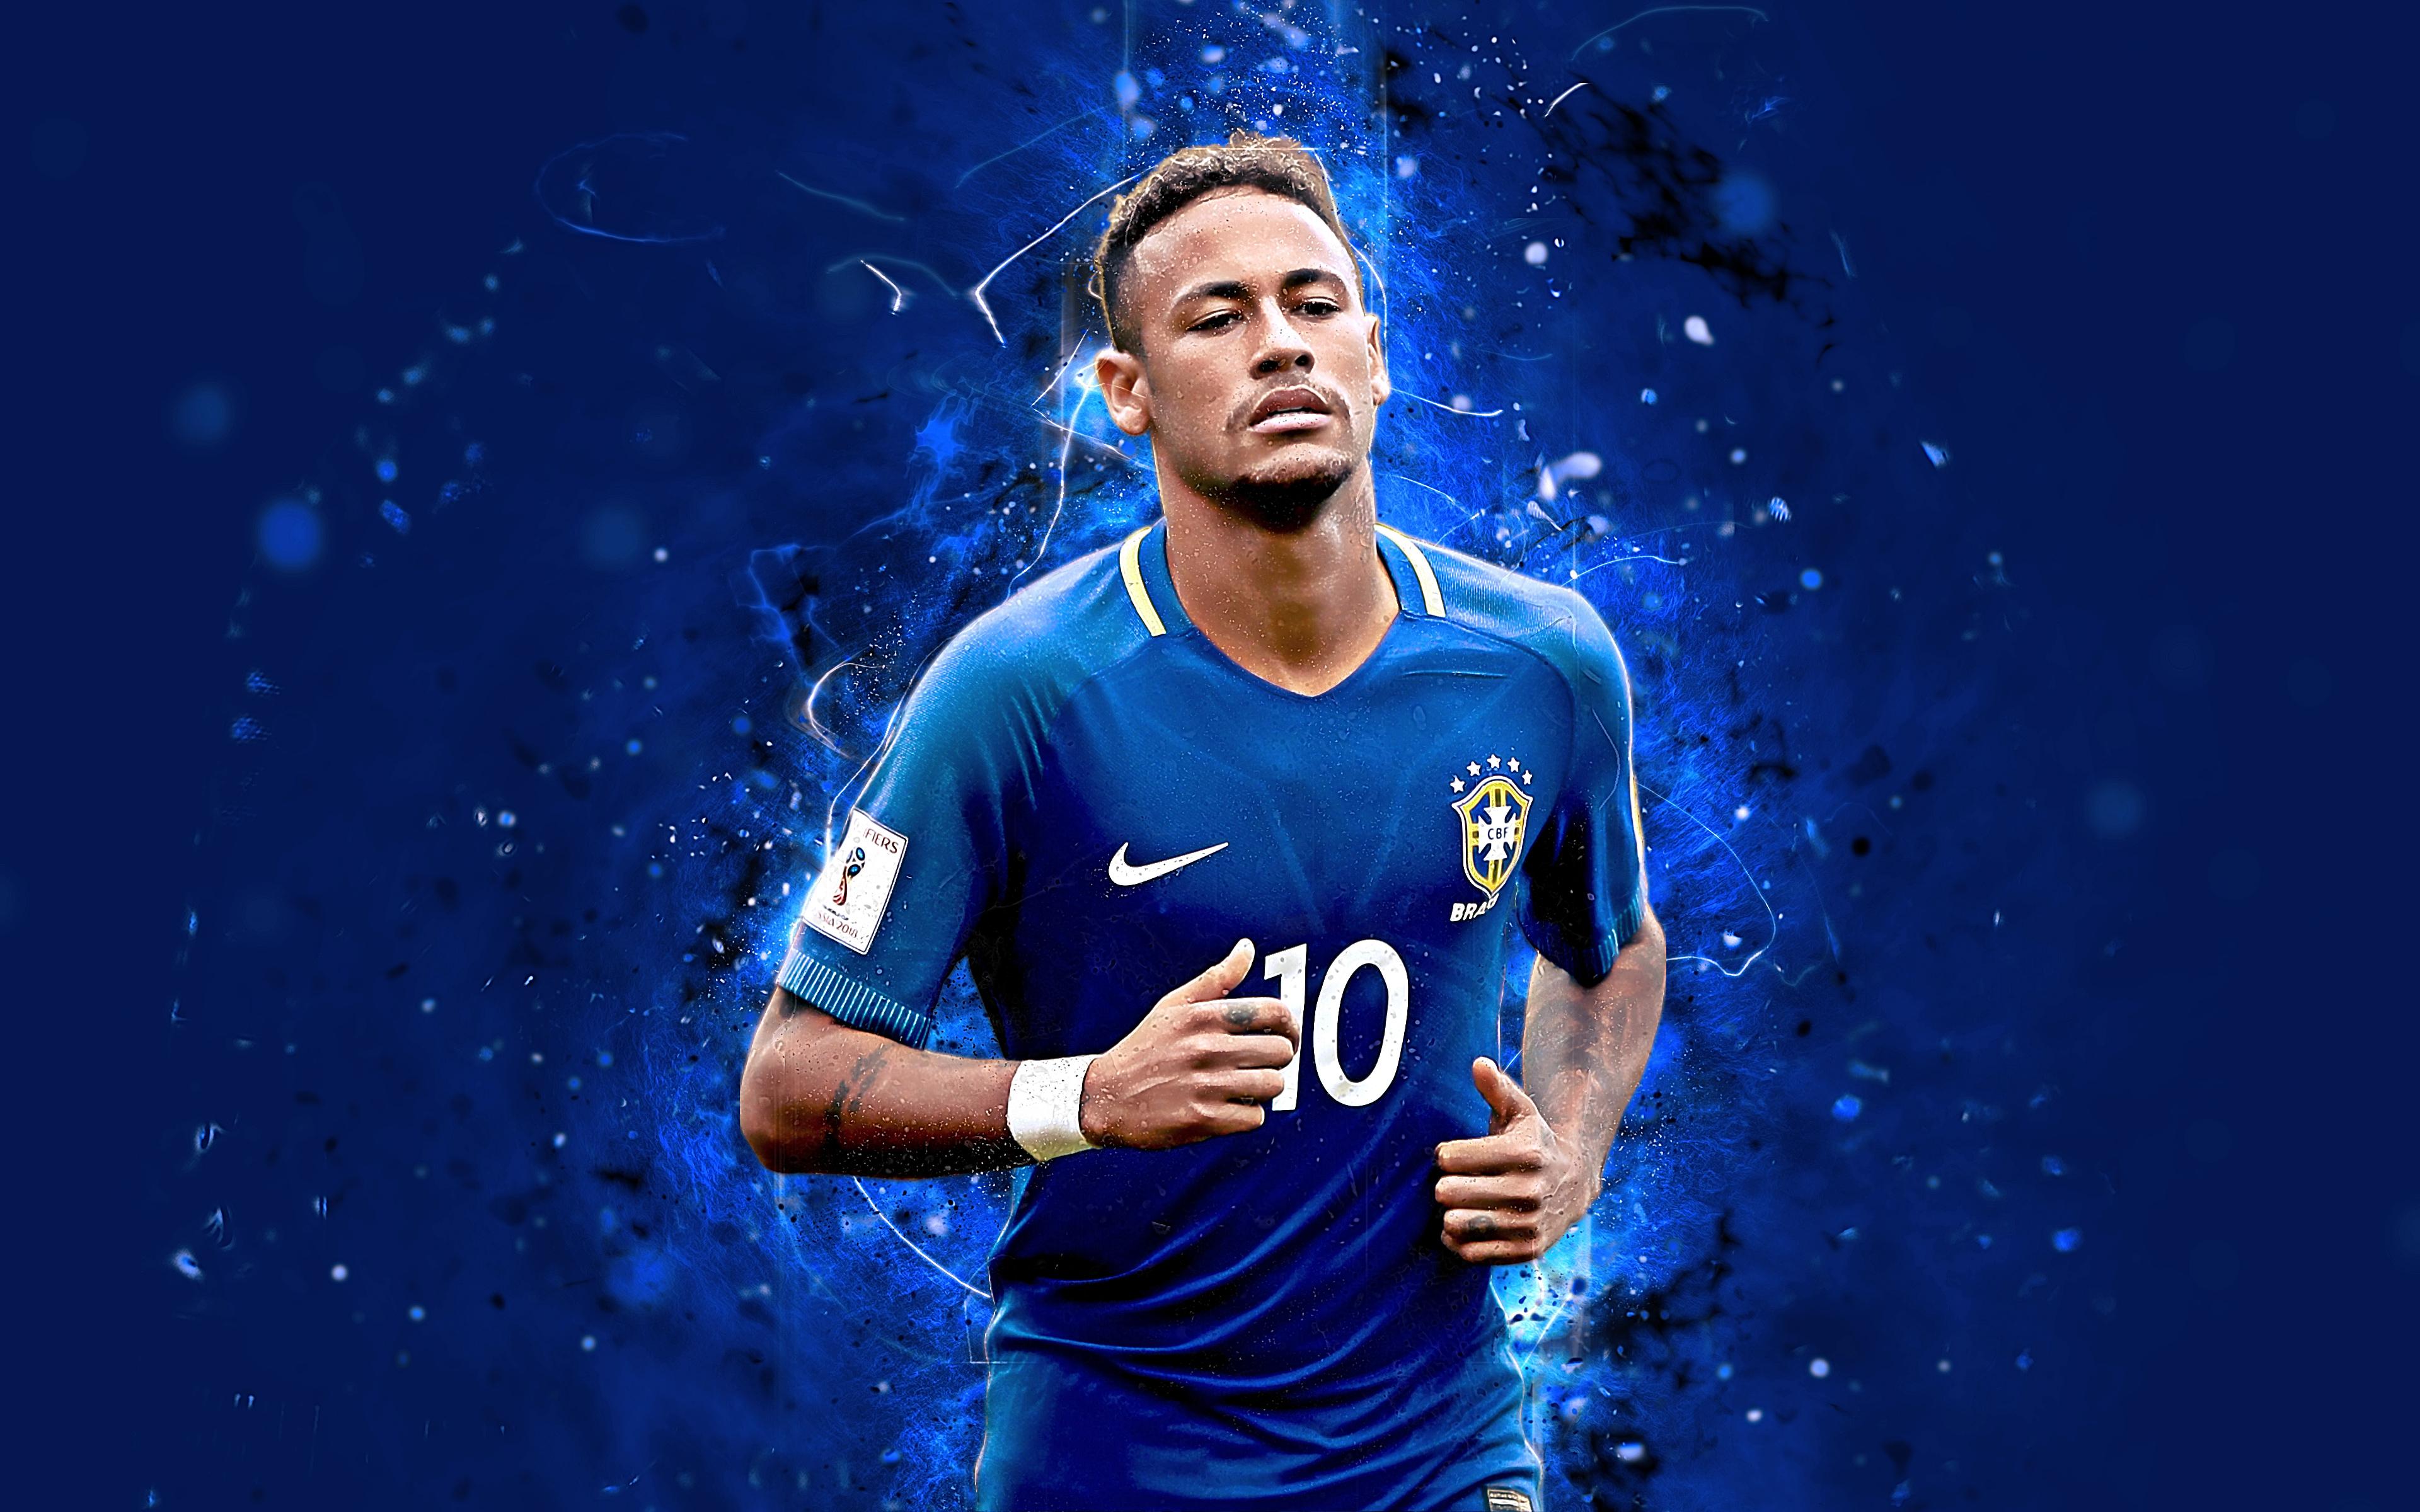 3840 x 2400 · jpeg - Neymar Jr - Brazil 4k Ultra HD Wallpaper | Hintergrund | 3840x2400 | ID ...